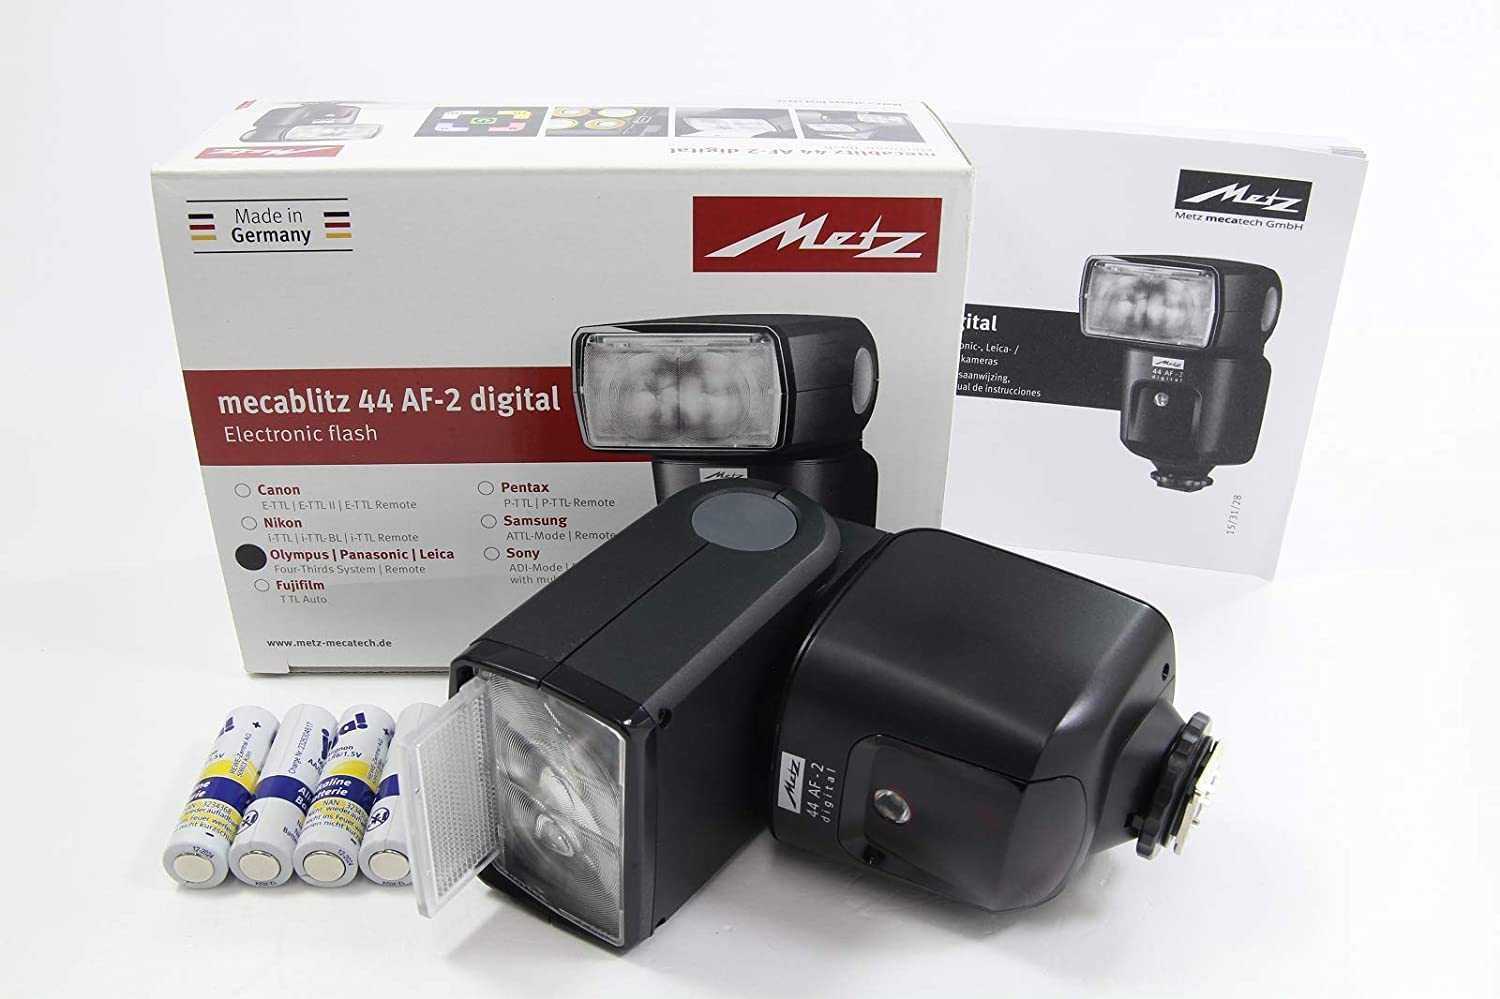 Metz mecablitz 76 mz-5 digital for canon купить по акционной цене , отзывы и обзоры.